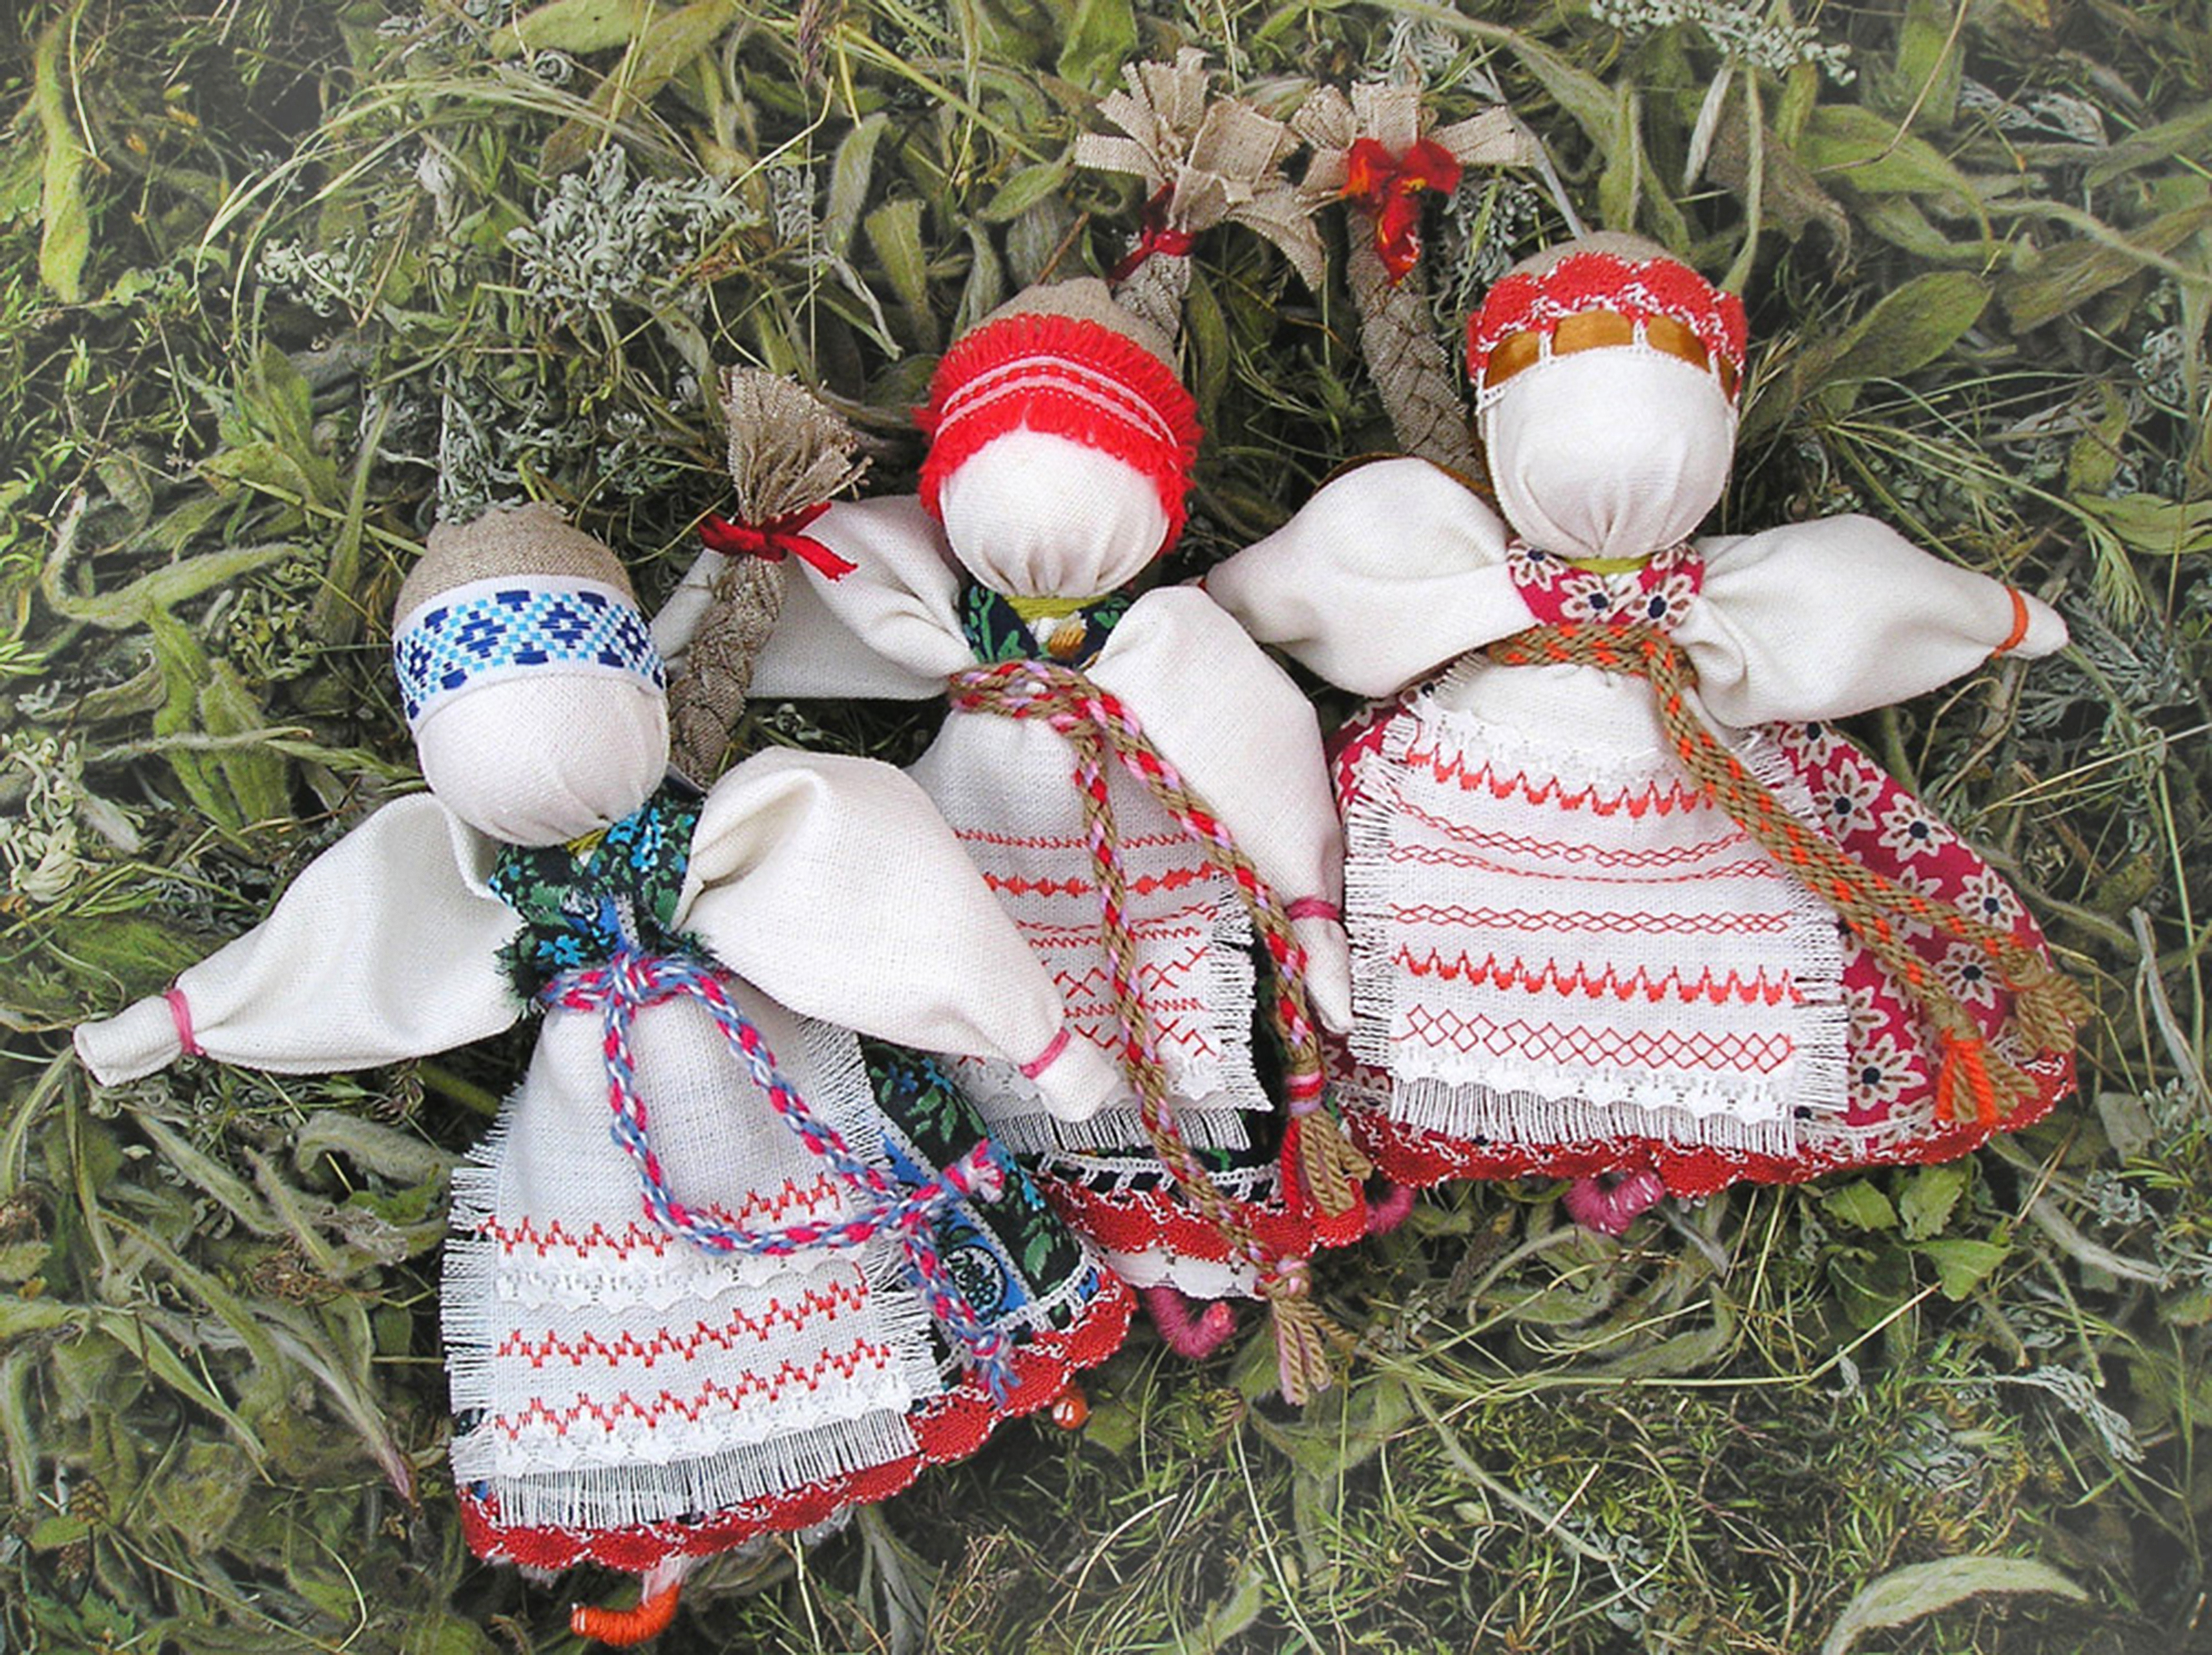 Национальные обереги. Белорусская кукла мотанка. Белорусские национальные куклы. Белорусская народная кукла. Белорусские куклы обереги.